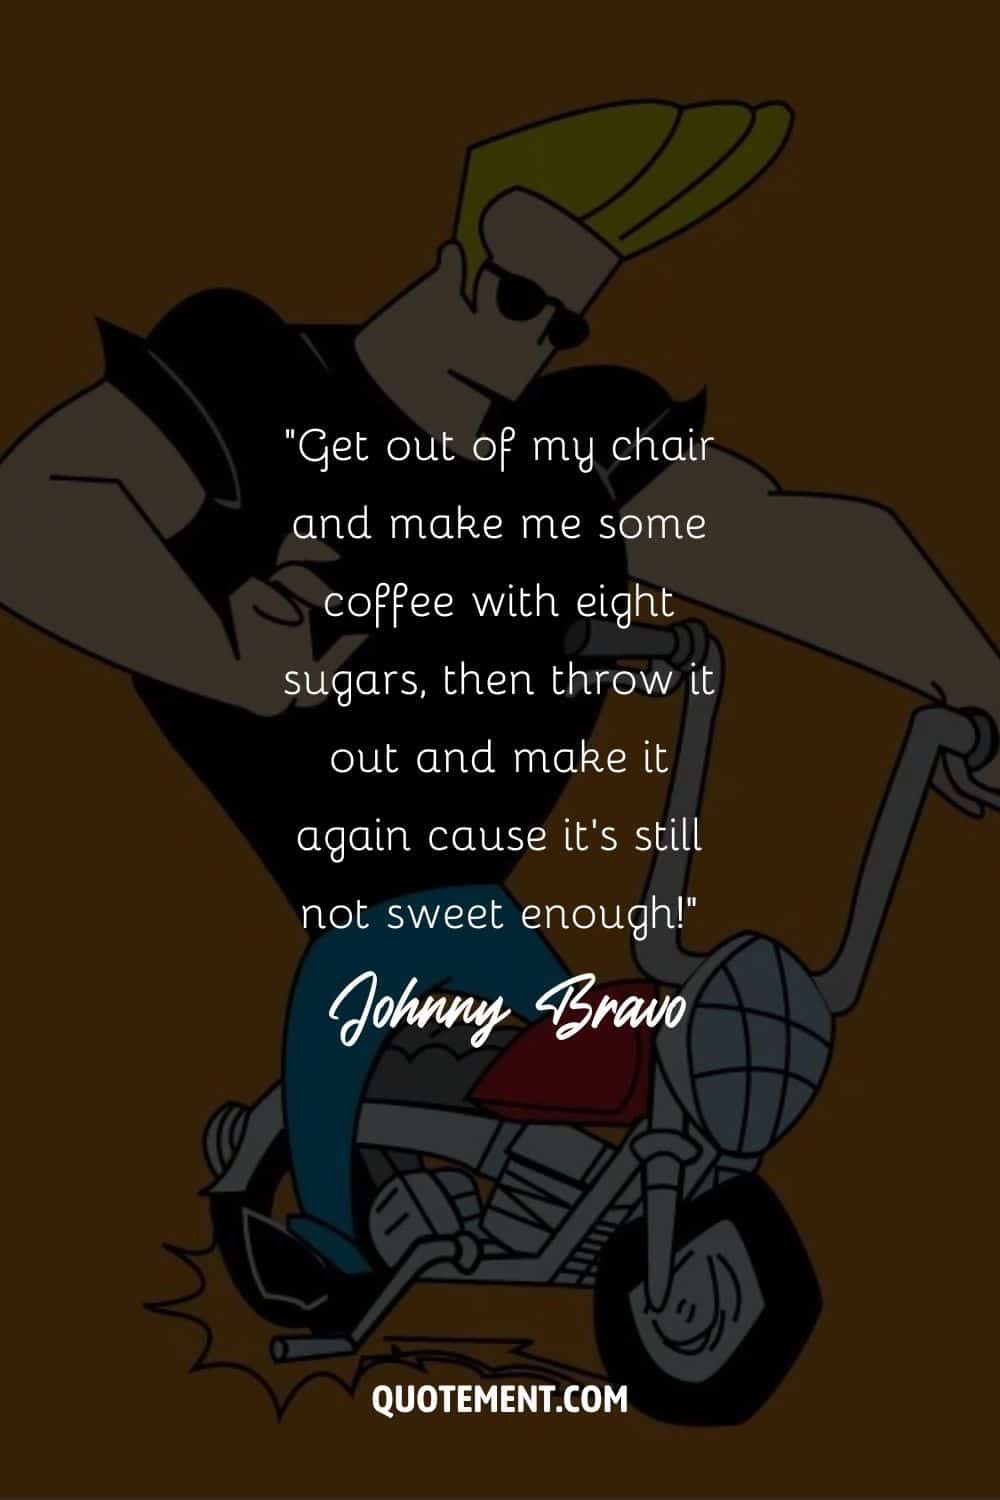 Johnny Bravo on a bike
